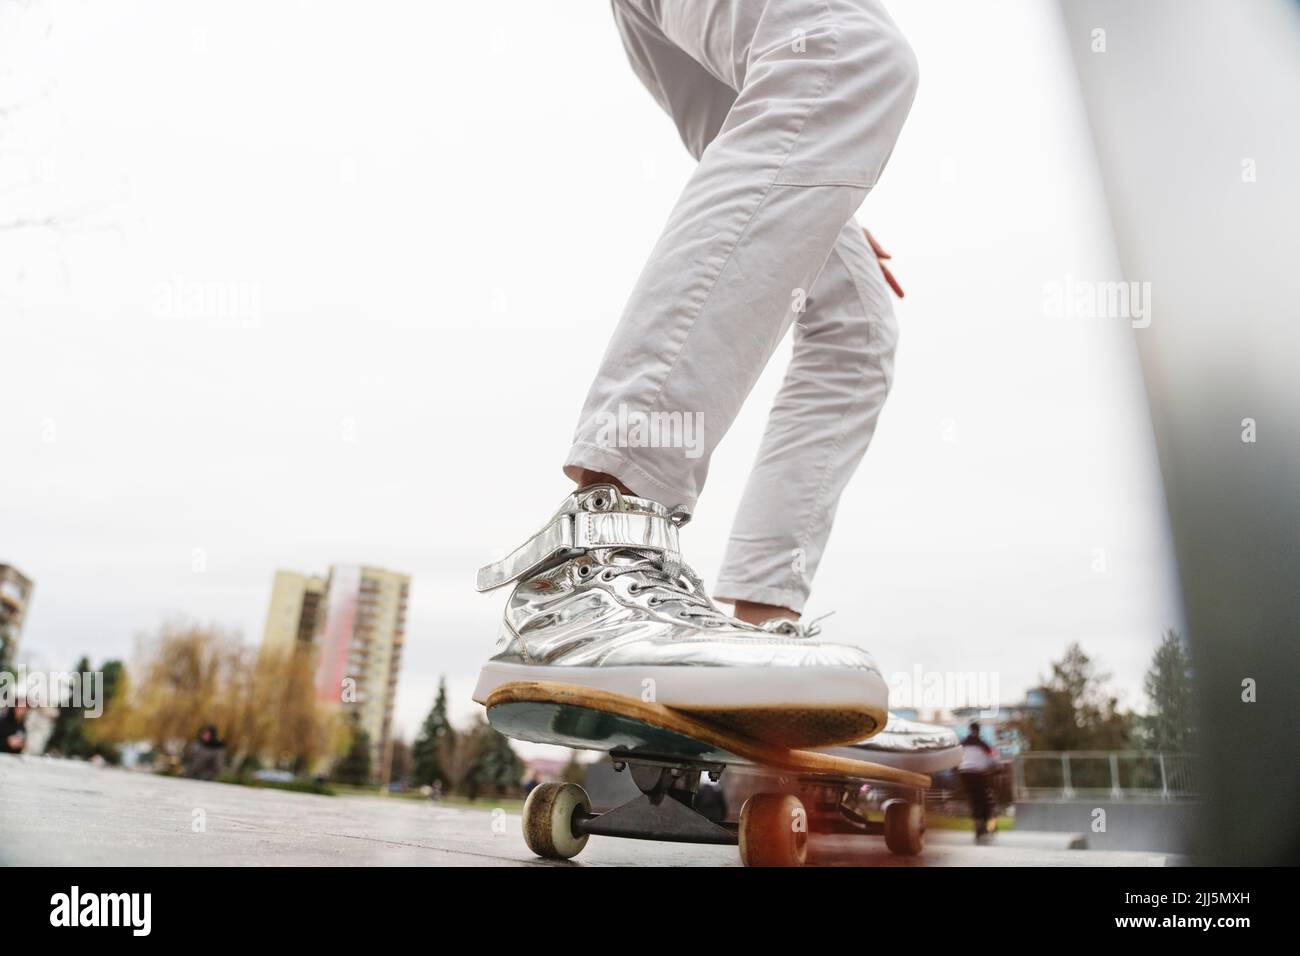 Legs of mature man on skateboard Stock Photo